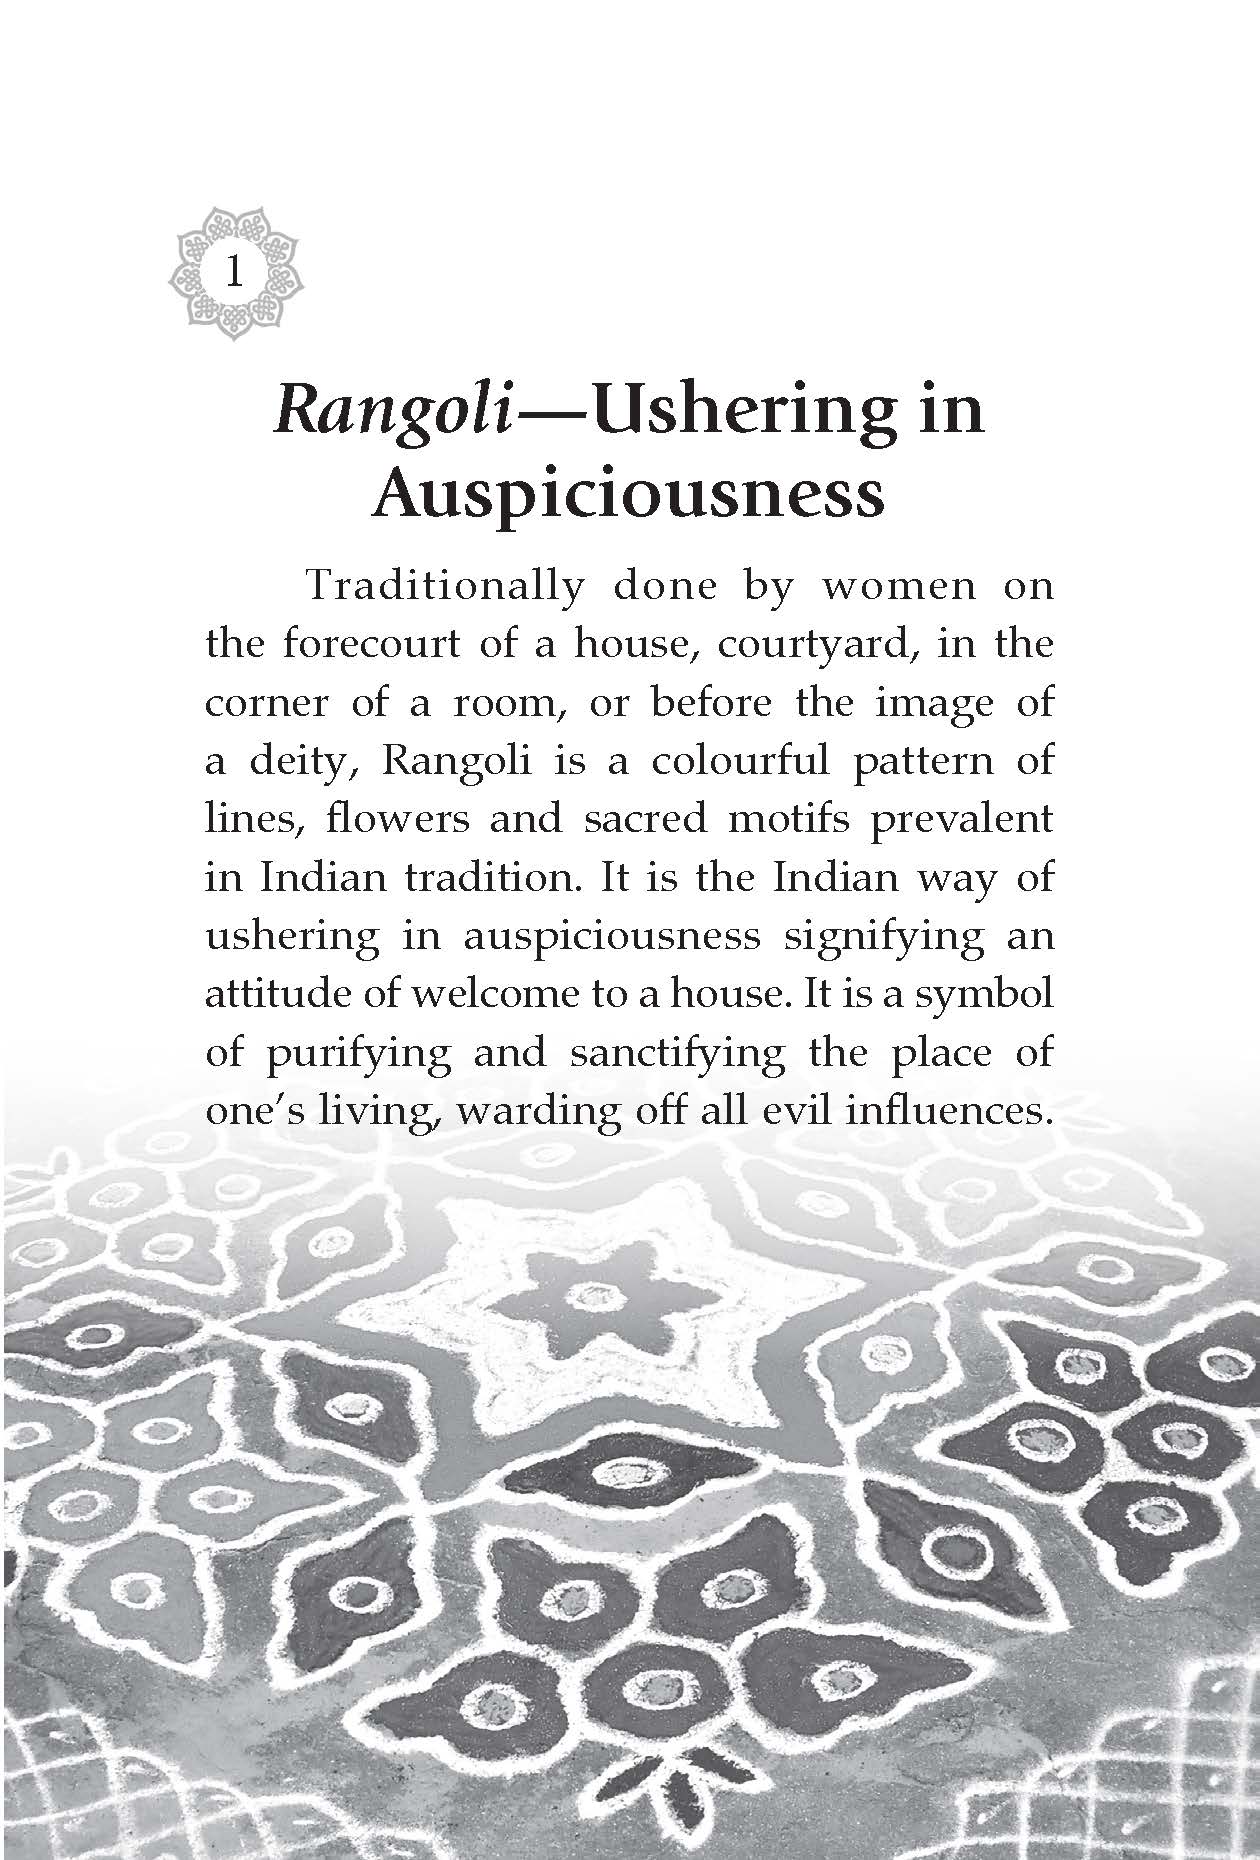 Living Imprints of Indian Culture